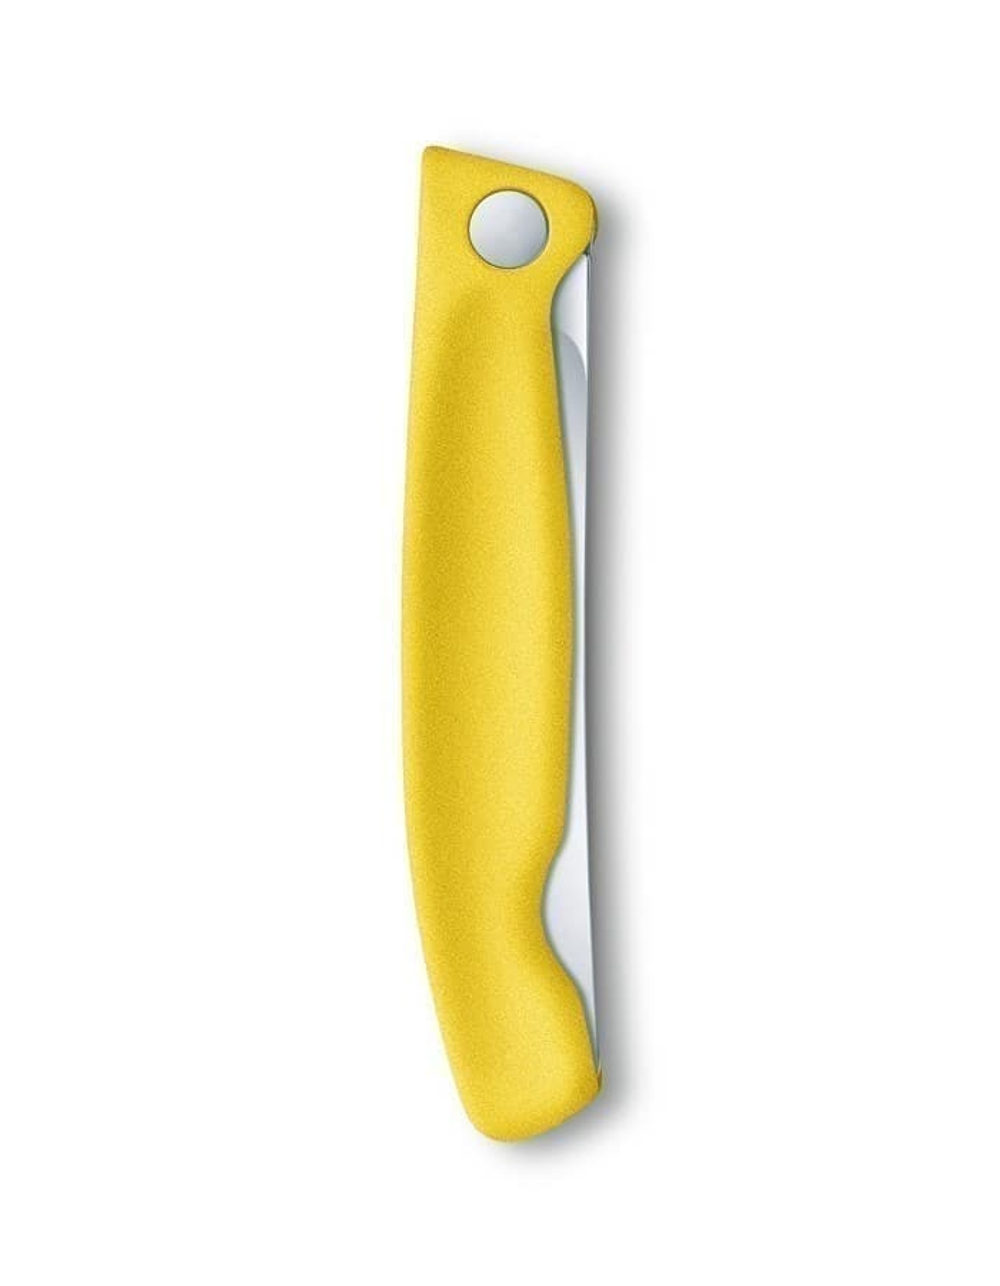 Нож для овощей VICTORINOX SwissClassic, складной, лезвие 11 см с волнистой кромкой, жёлтый